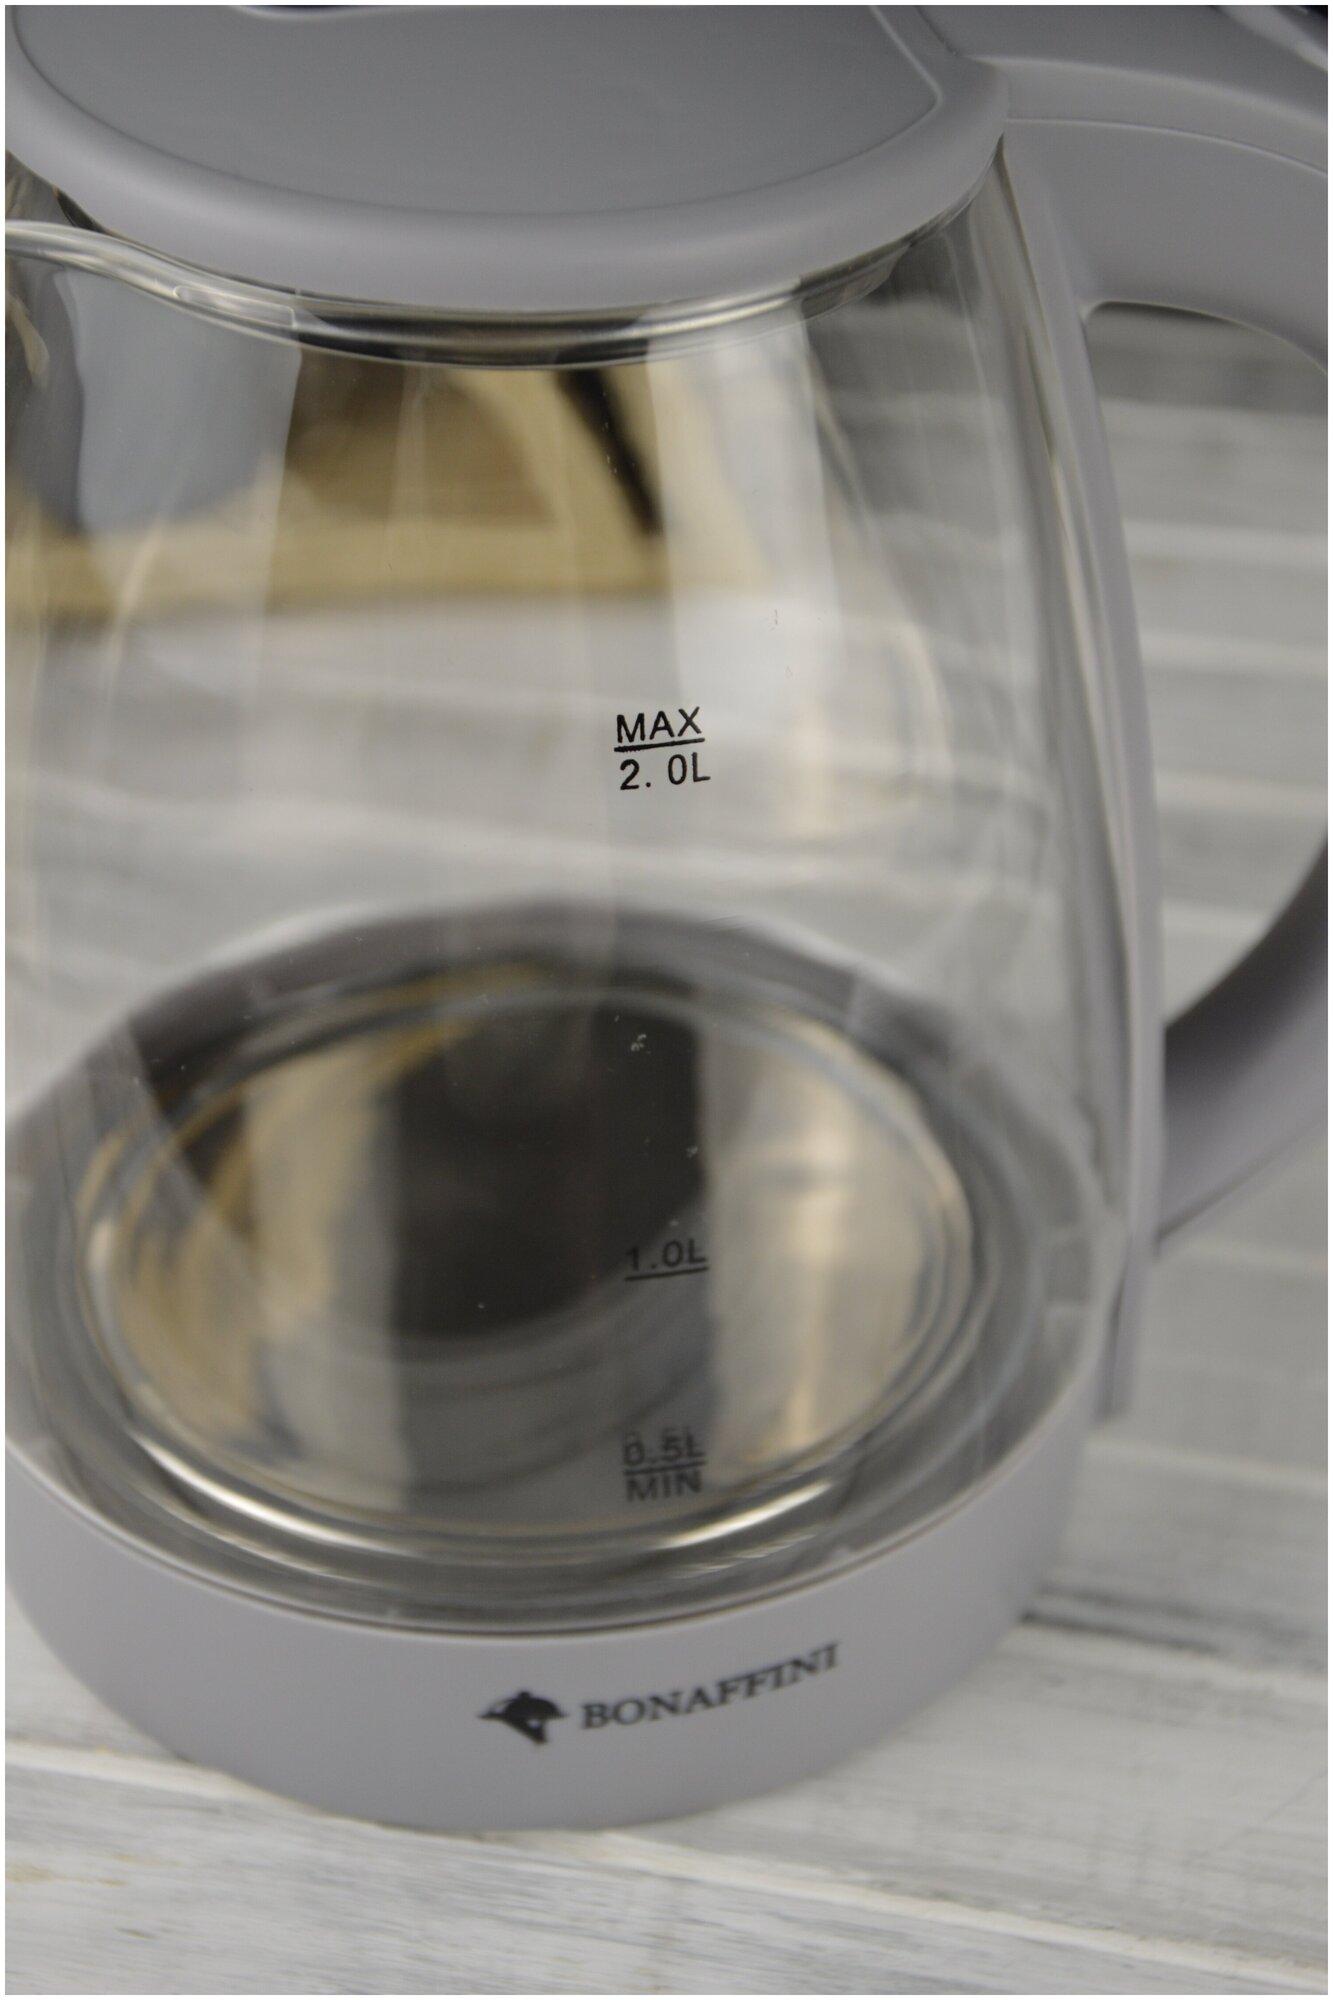 Электрический стеклянный чайник Bonaffini, 2 л, 1500 Вт, серый / электрочайник - фотография № 8